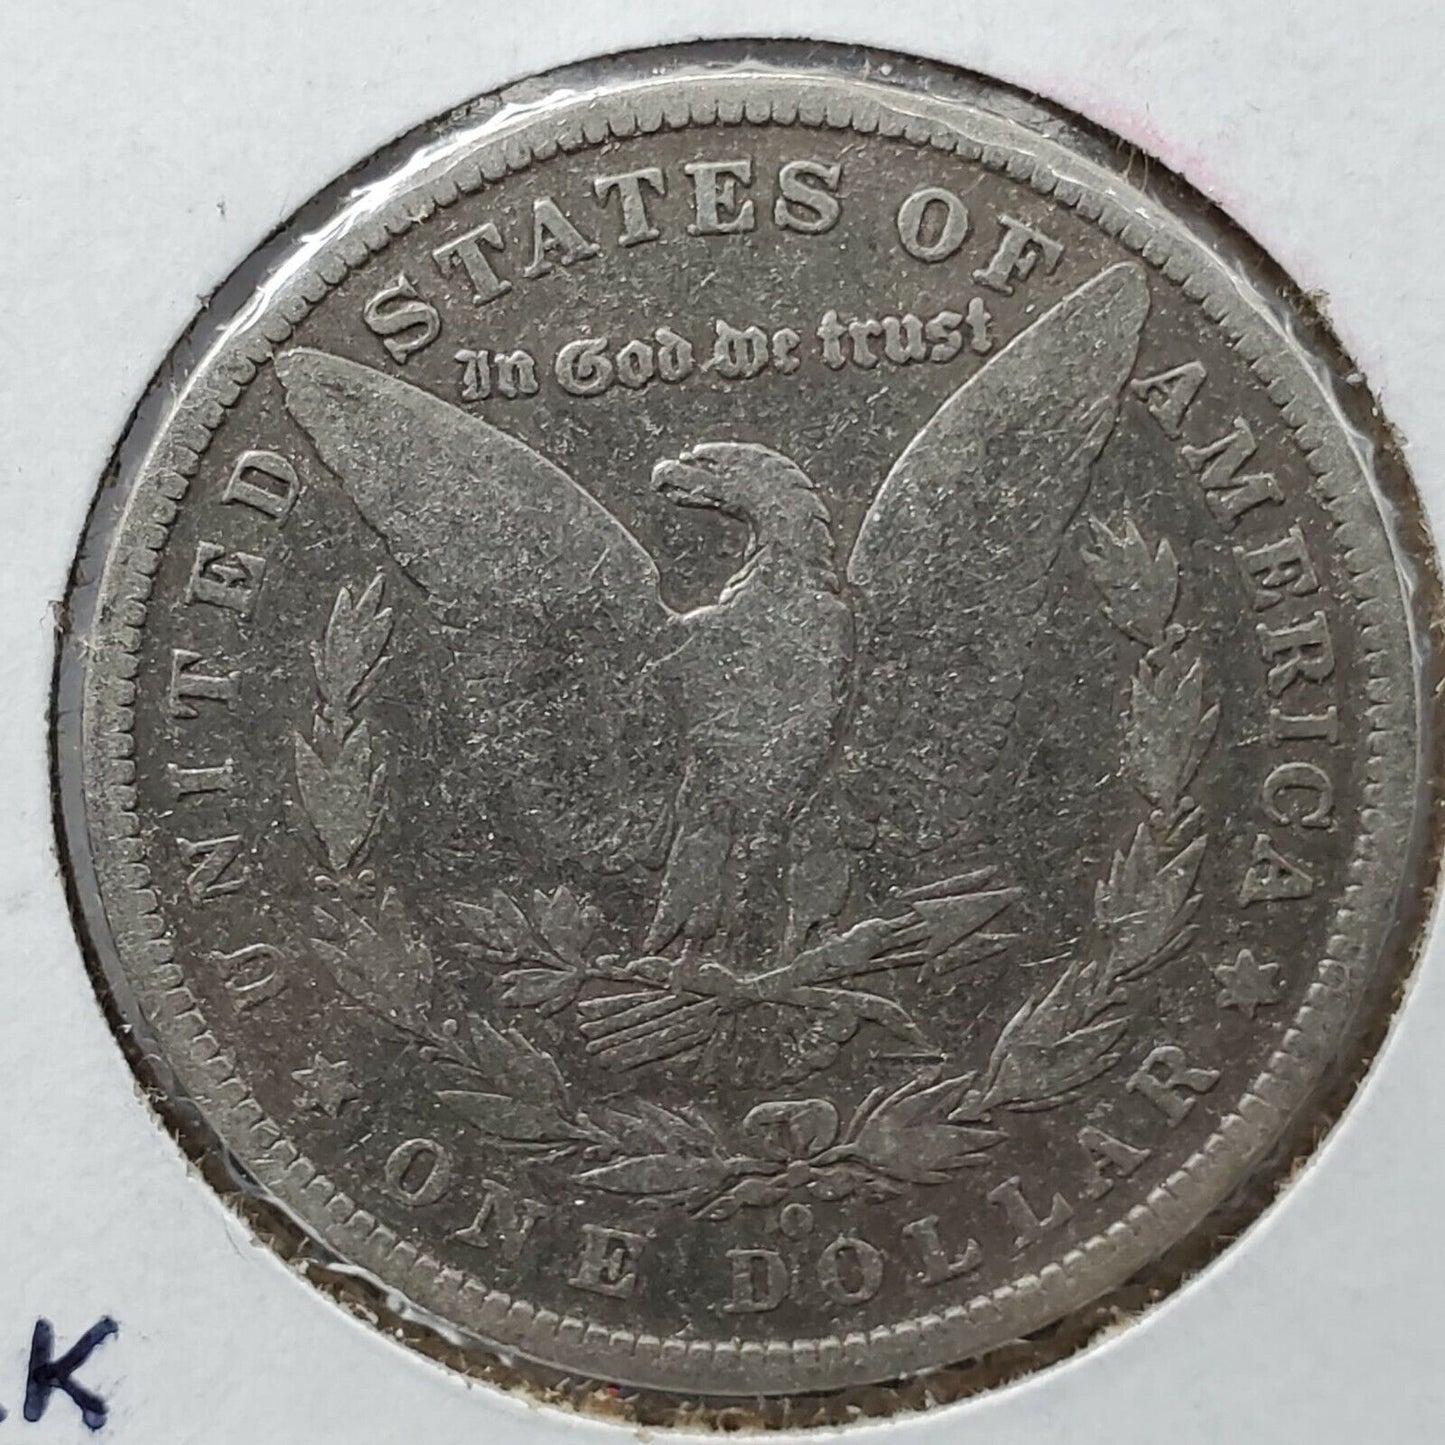 1880 O $1 Morgan Silver Eagle Dollar Coin VG / Fine Detail